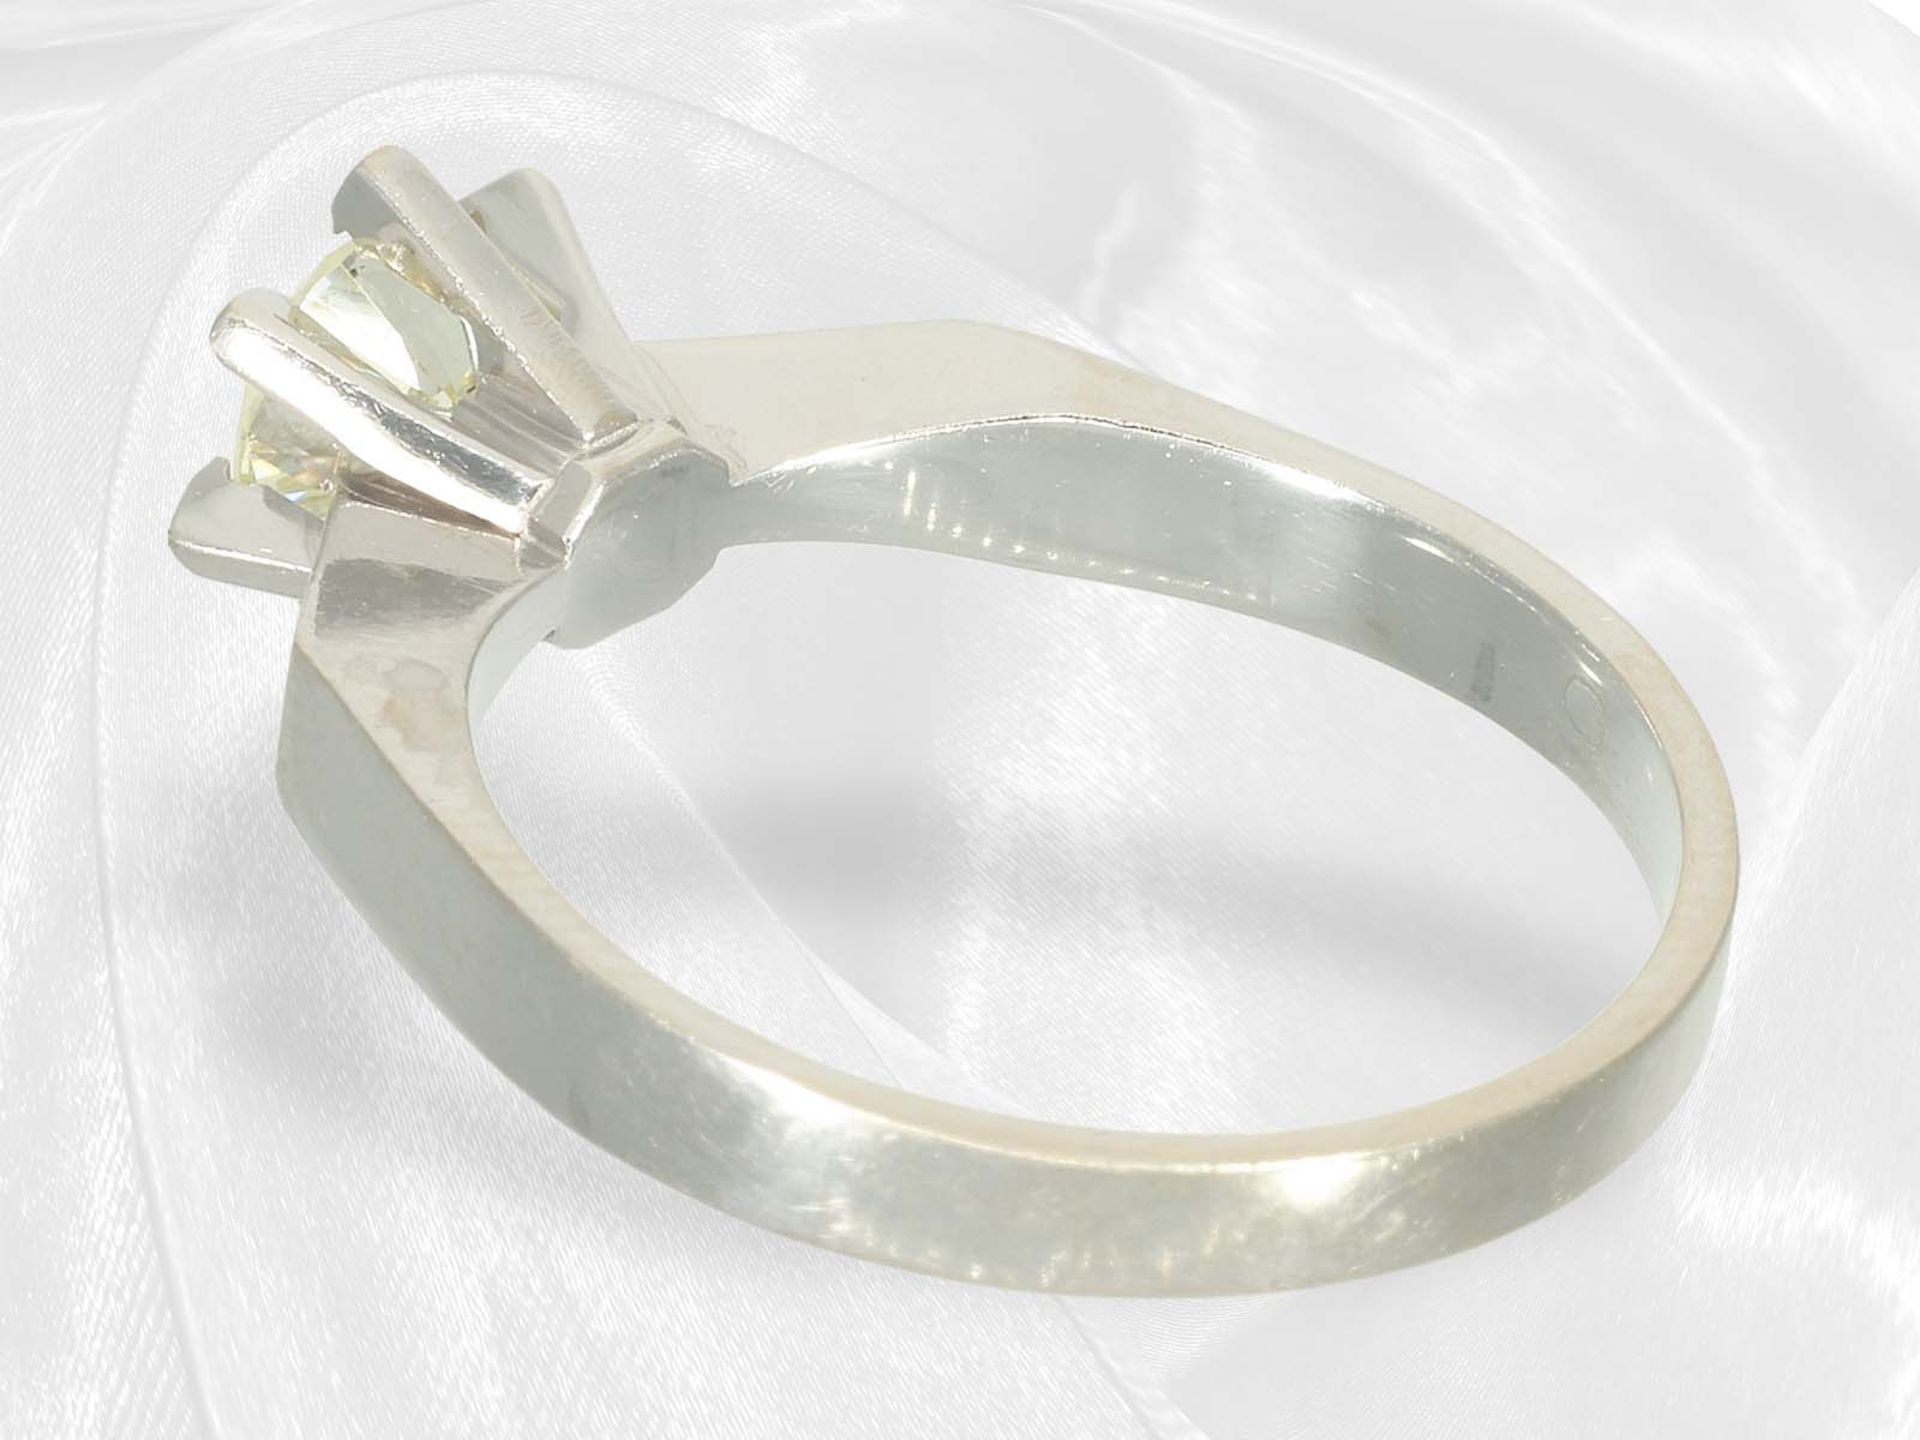 Vintage solitaire brilliant-cut diamond goldsmith ring, approx. 0.7ct brilliant-cut diamond - Image 4 of 4